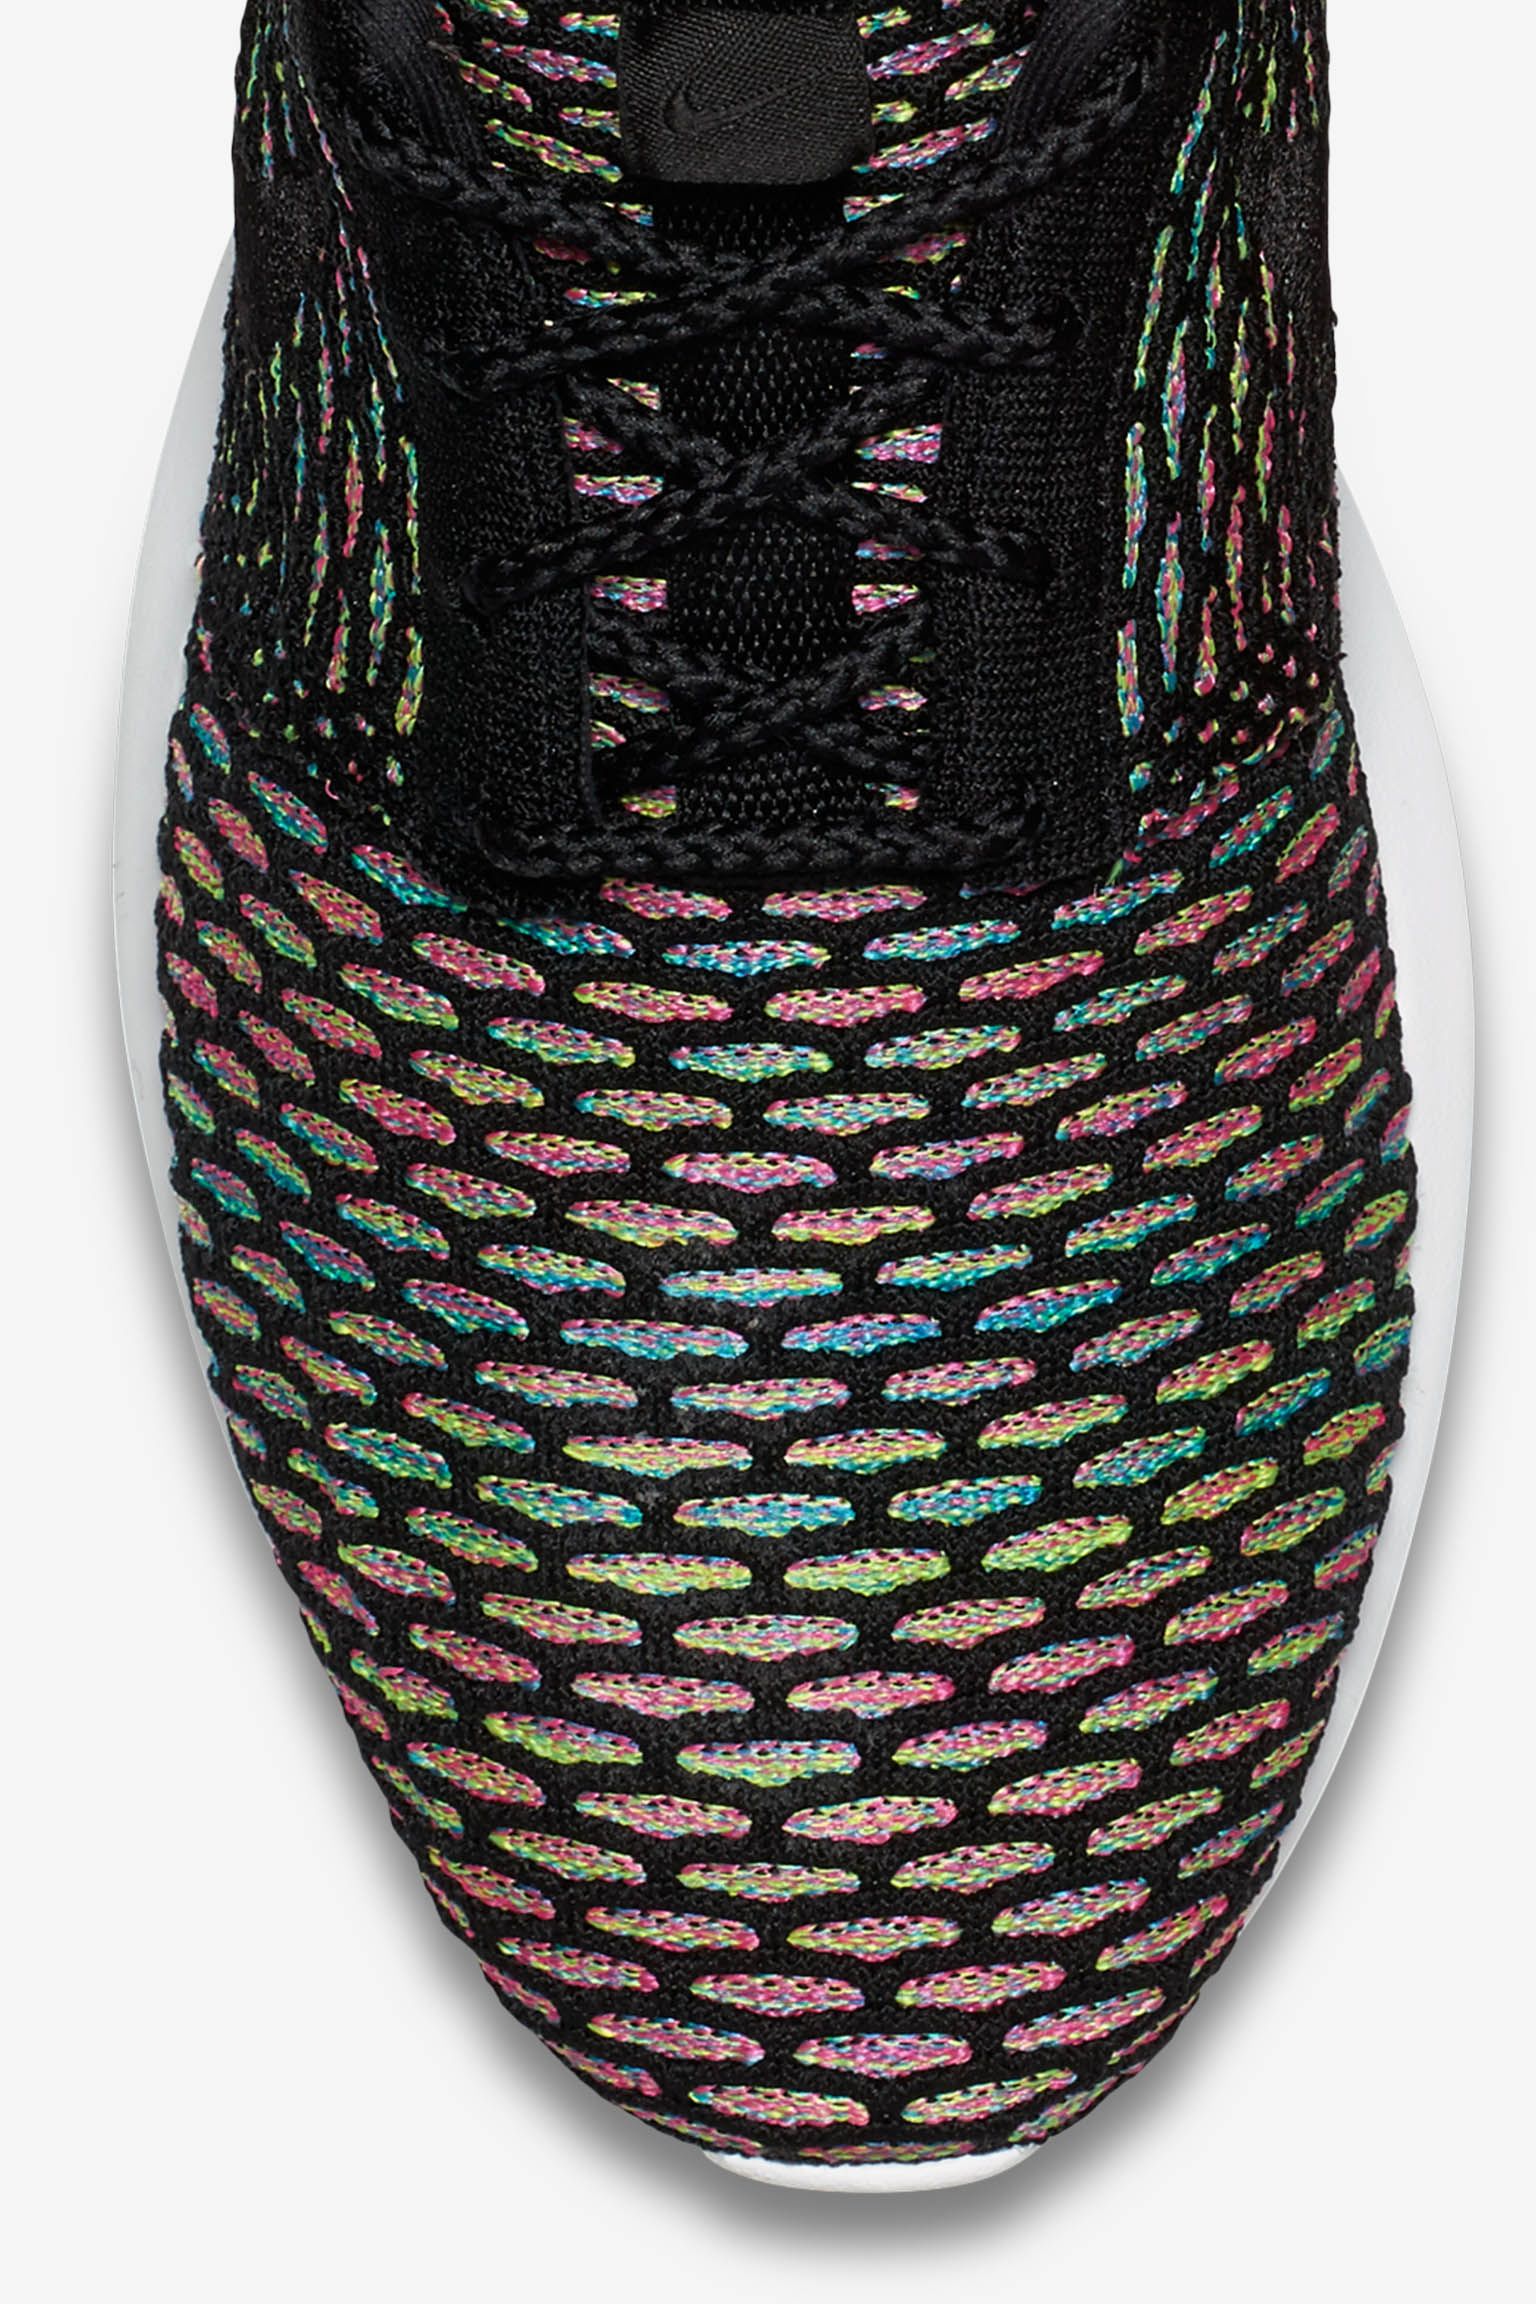 Nike One Flyknit "Multicolor". Nike SNKRS DE